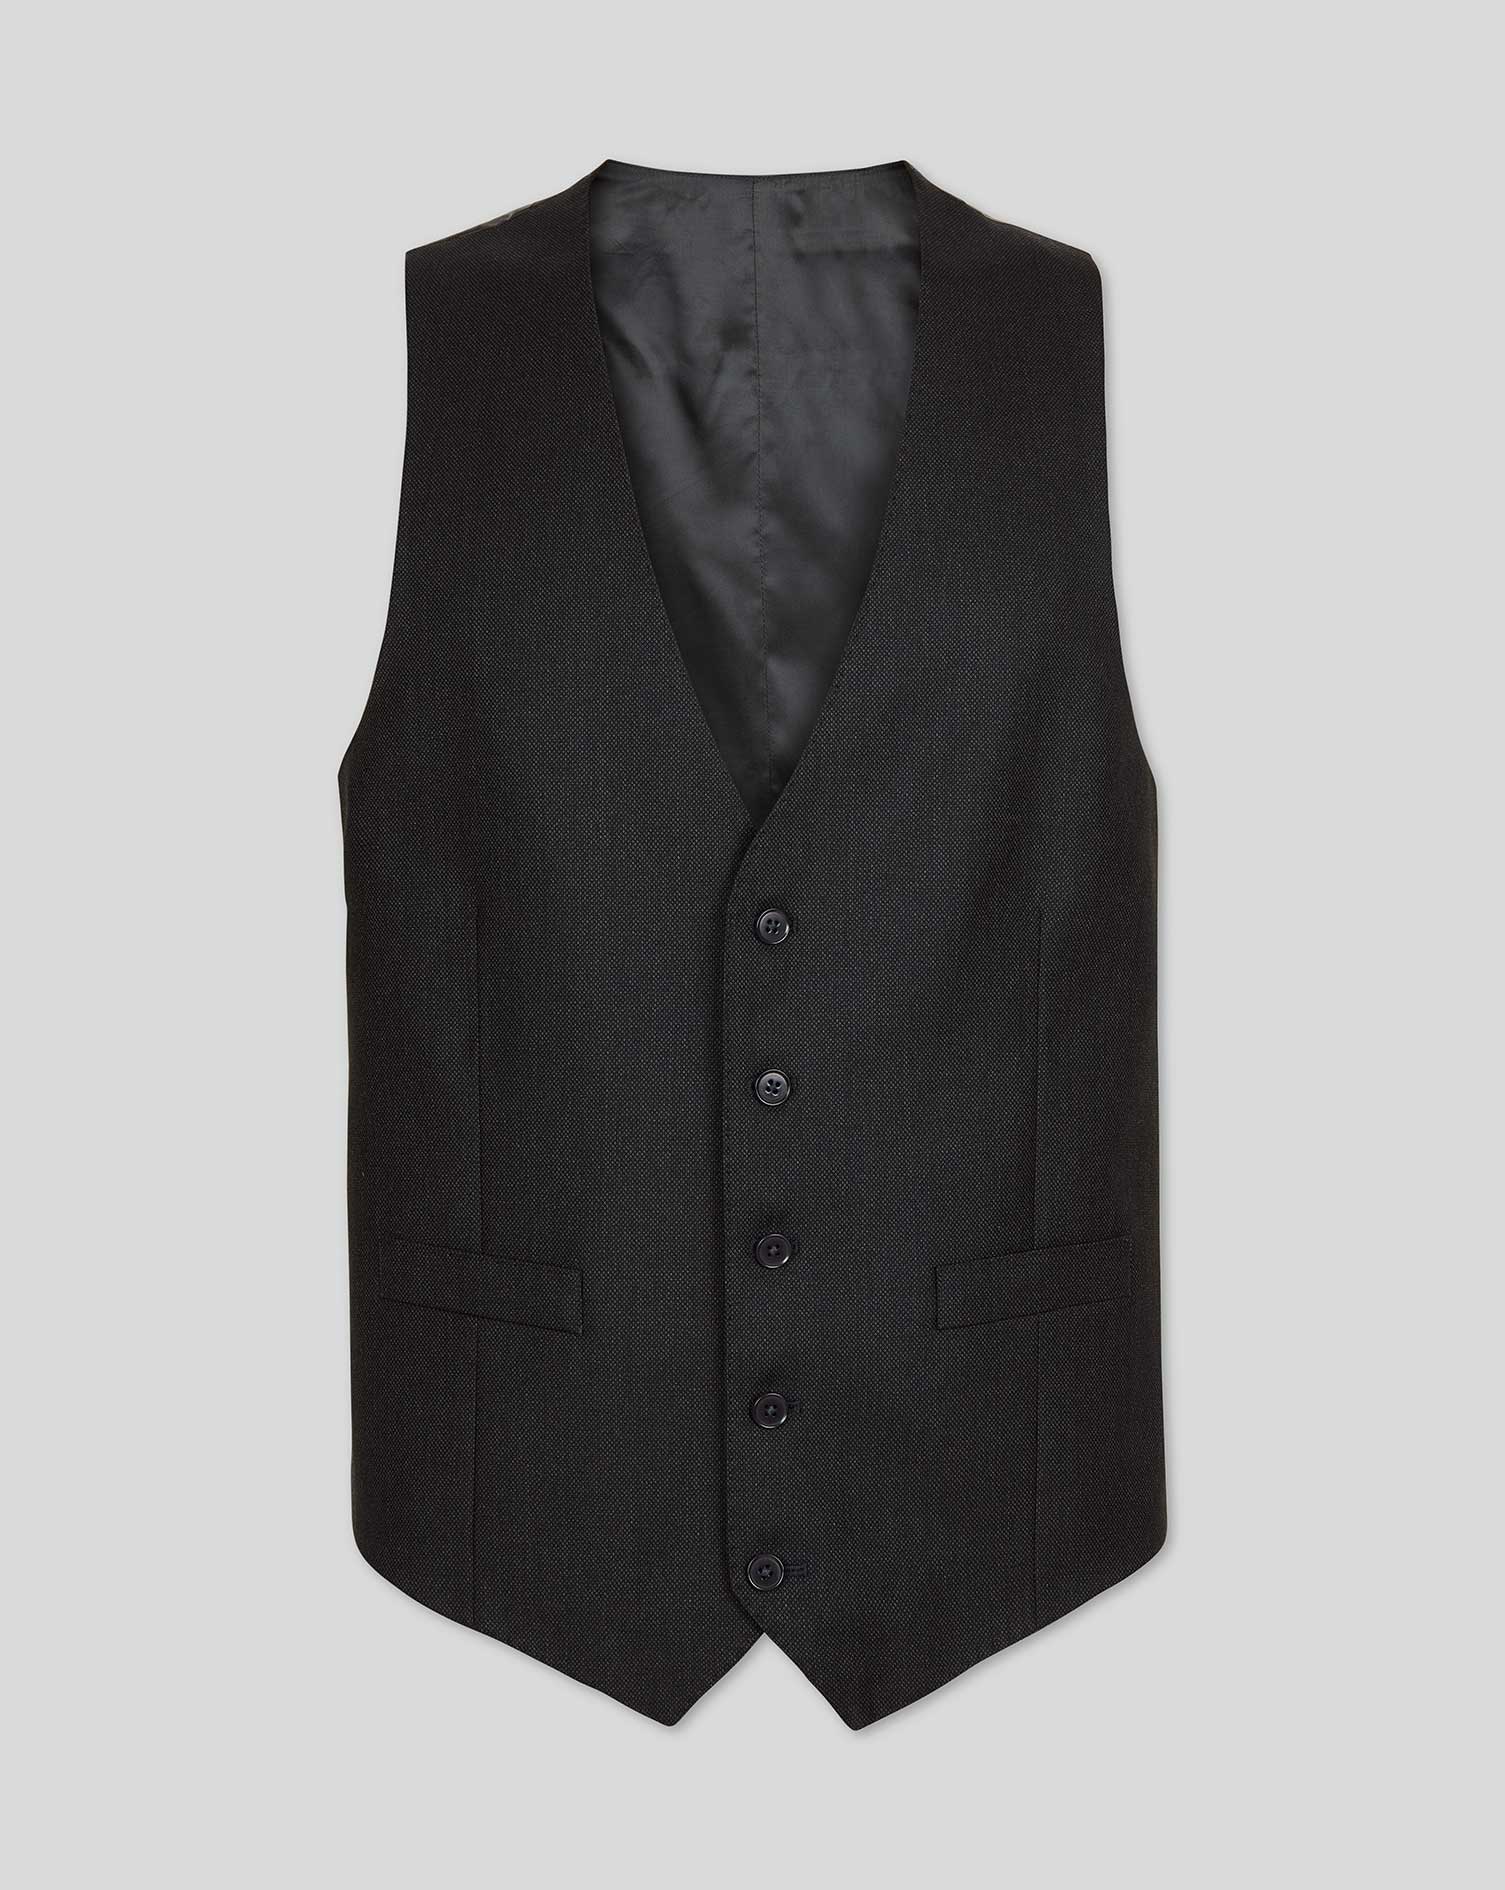 Men's Charles Tyrwhitt Birdseye Travel Suit Waistcoat - Charcoal Grey Size w44 Wool
